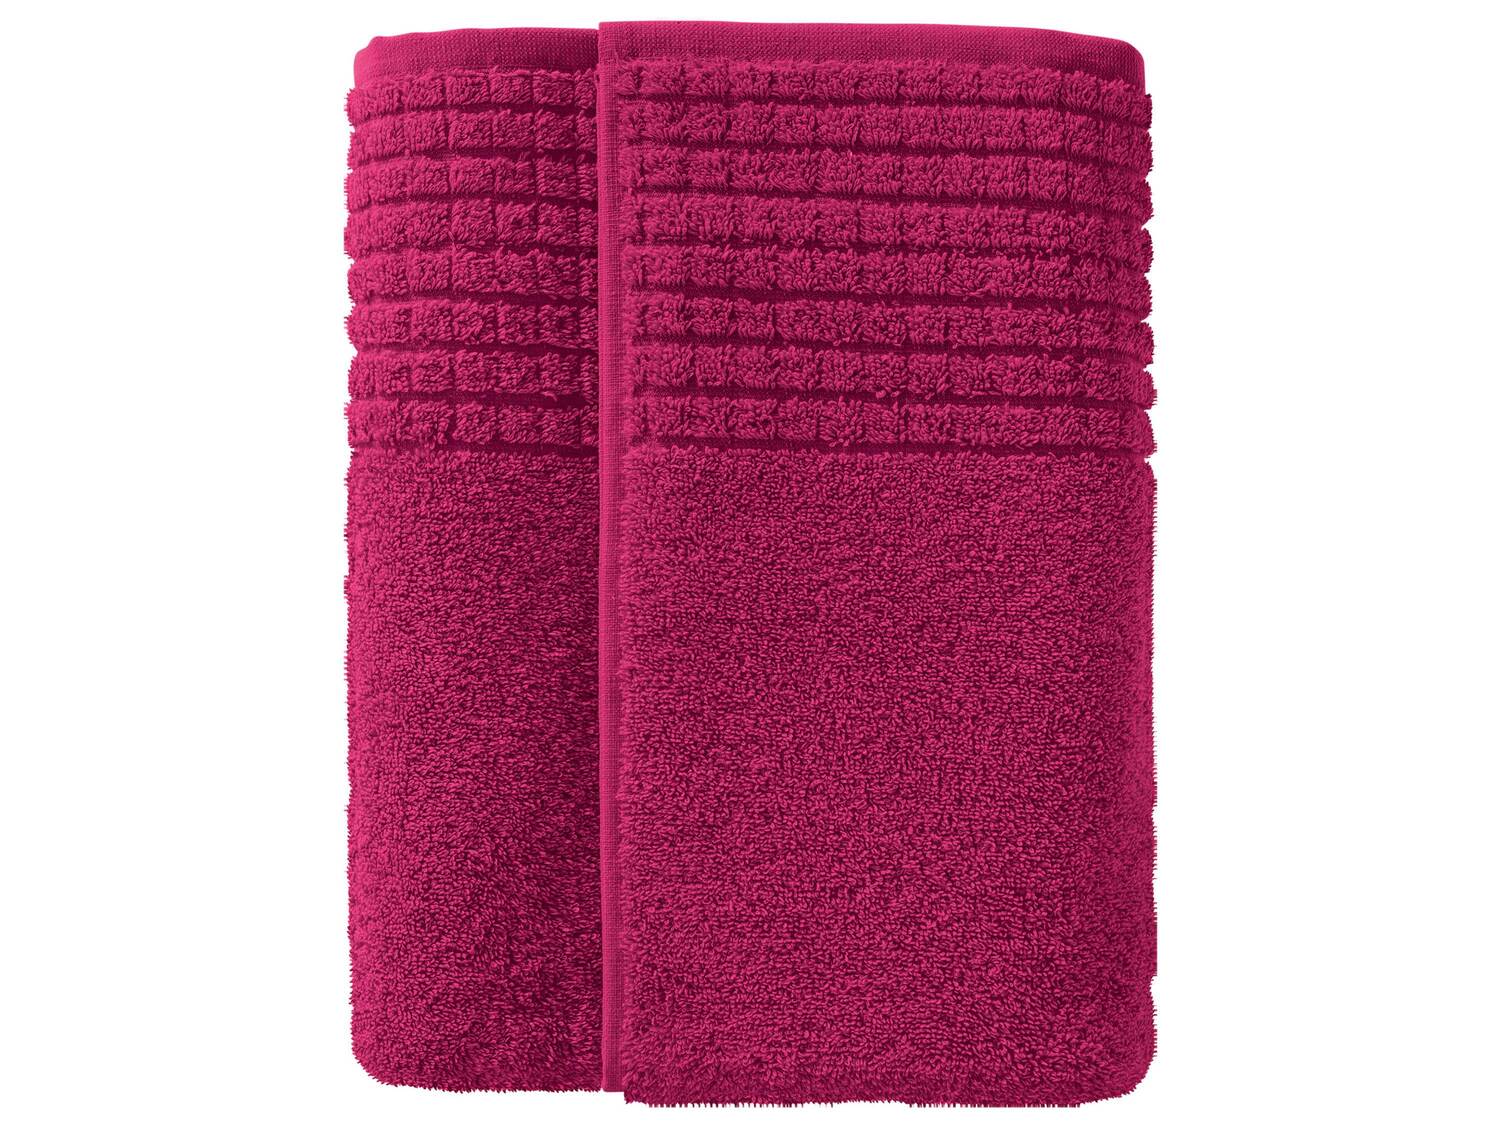 Ręcznik 70 x 130 cm Miomare, cena 19,99 PLN 
6 kolorów do wyboru 
- 100% bawełny
- ...